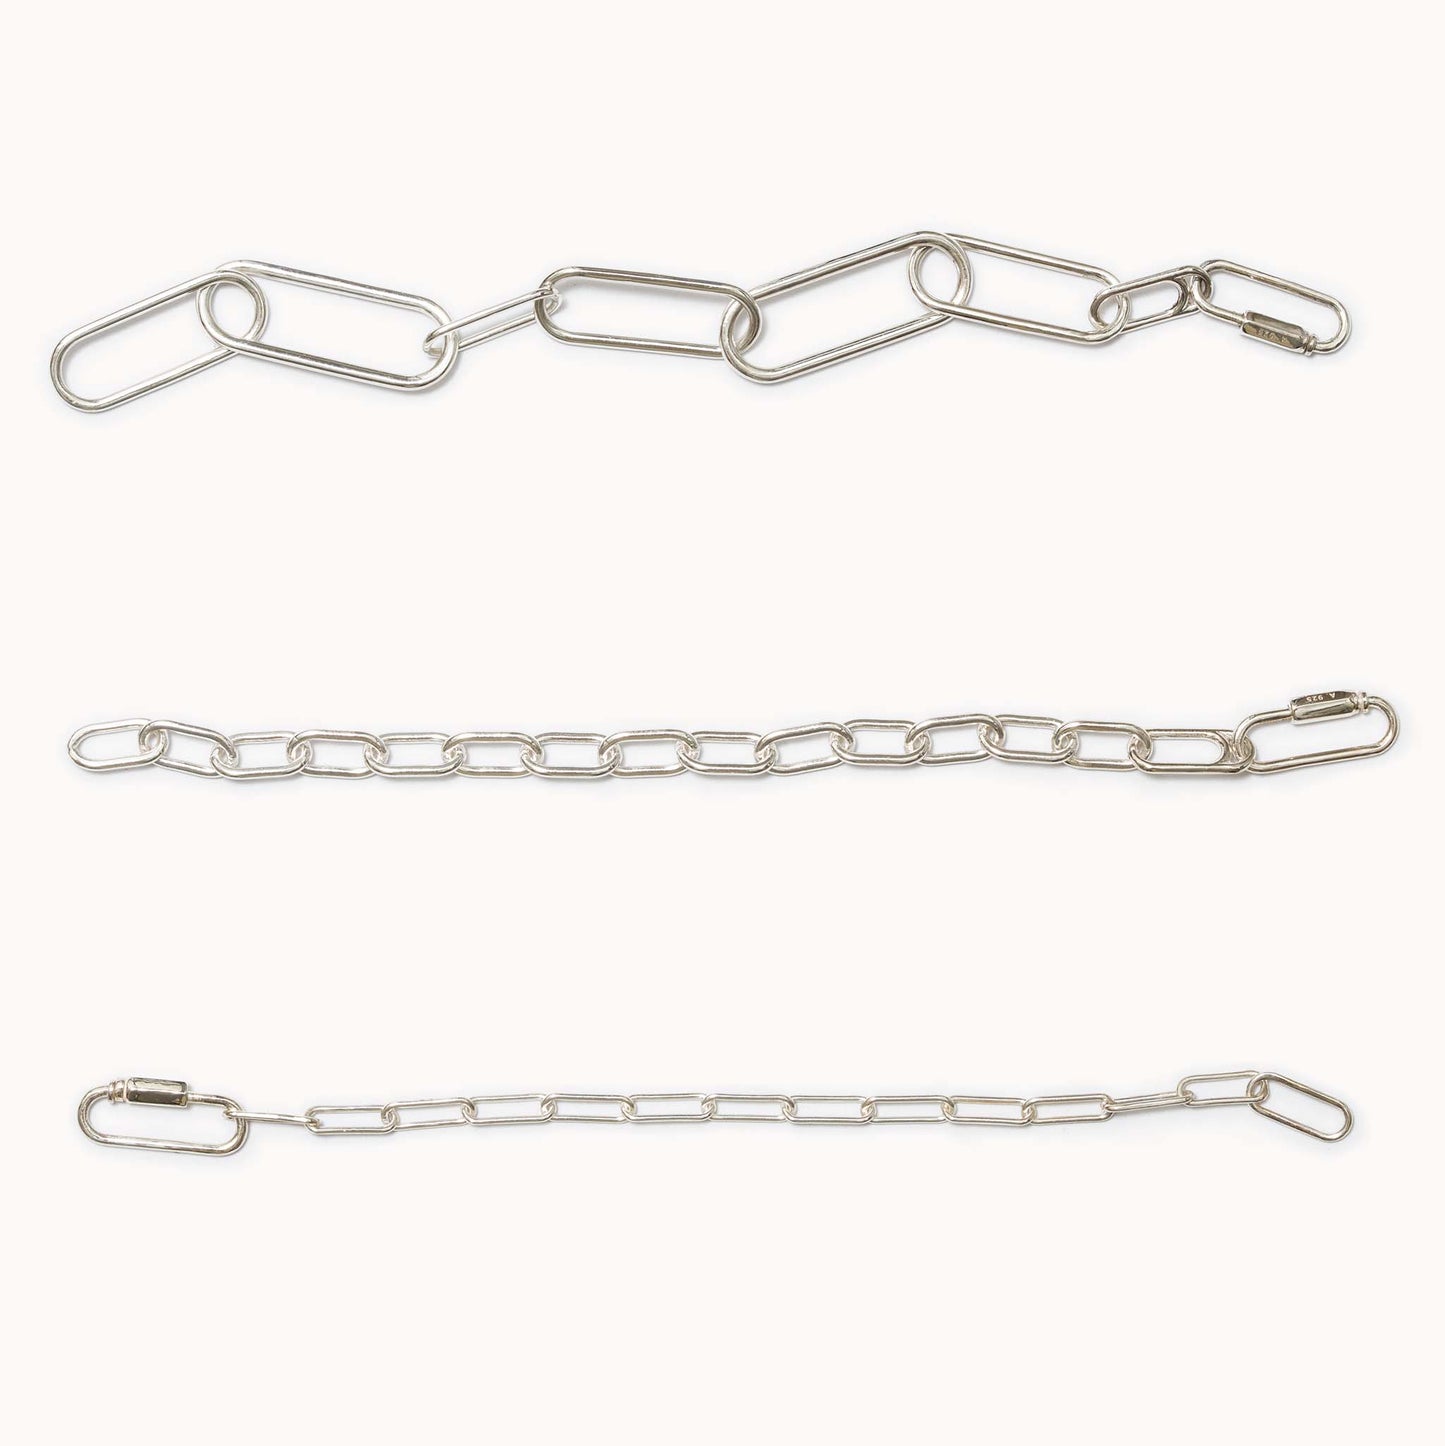 Chain Bracelet with Karabiner カラビナチェーンブレスレット M